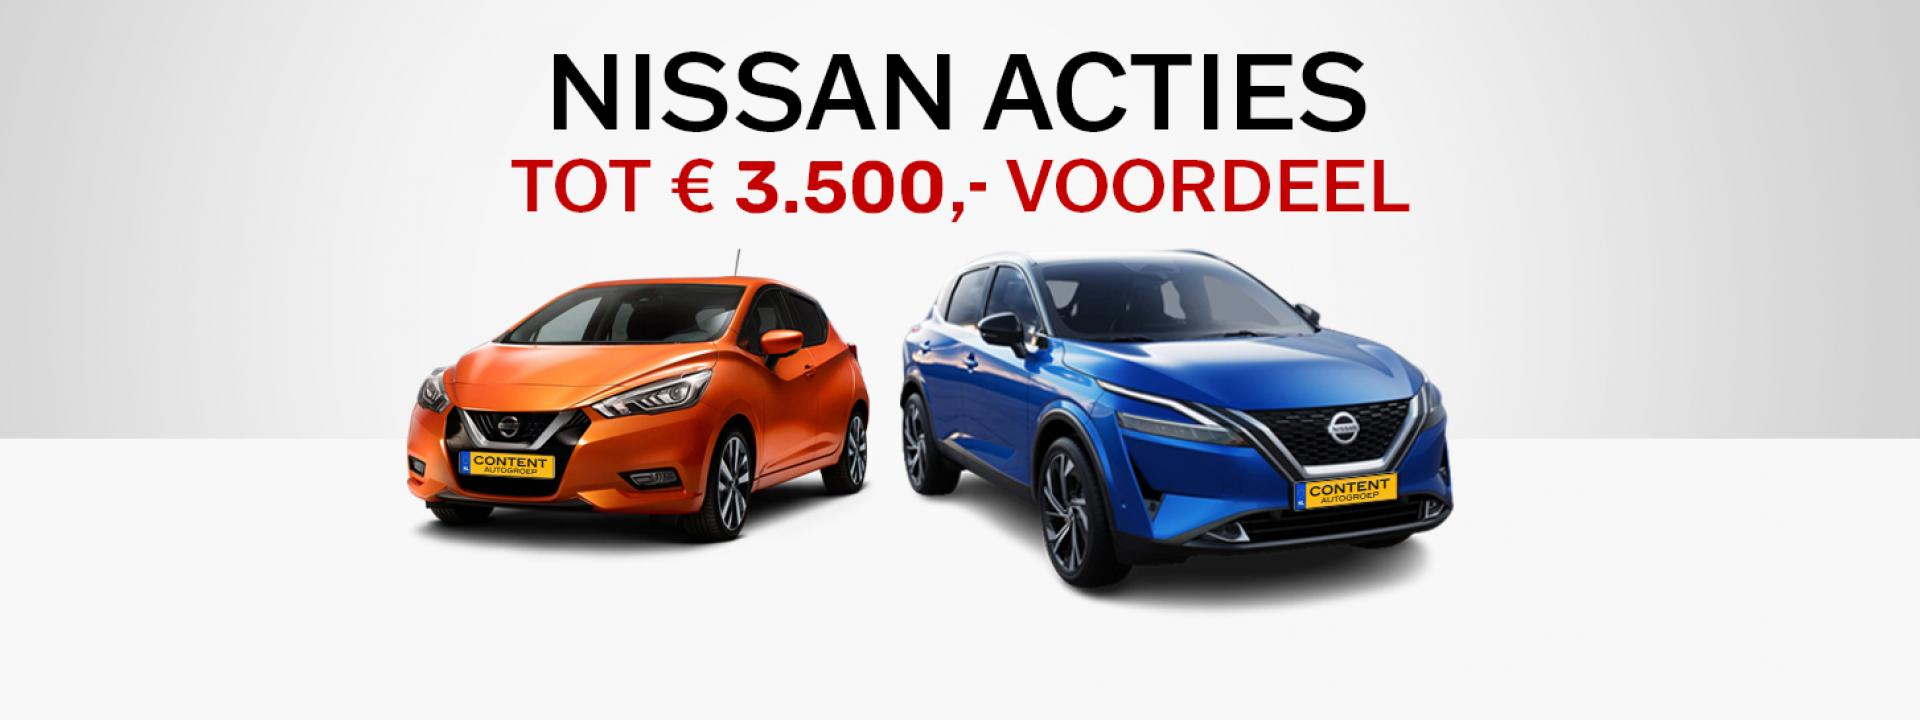 Nissan acties | tot € 3.500,- voordeel